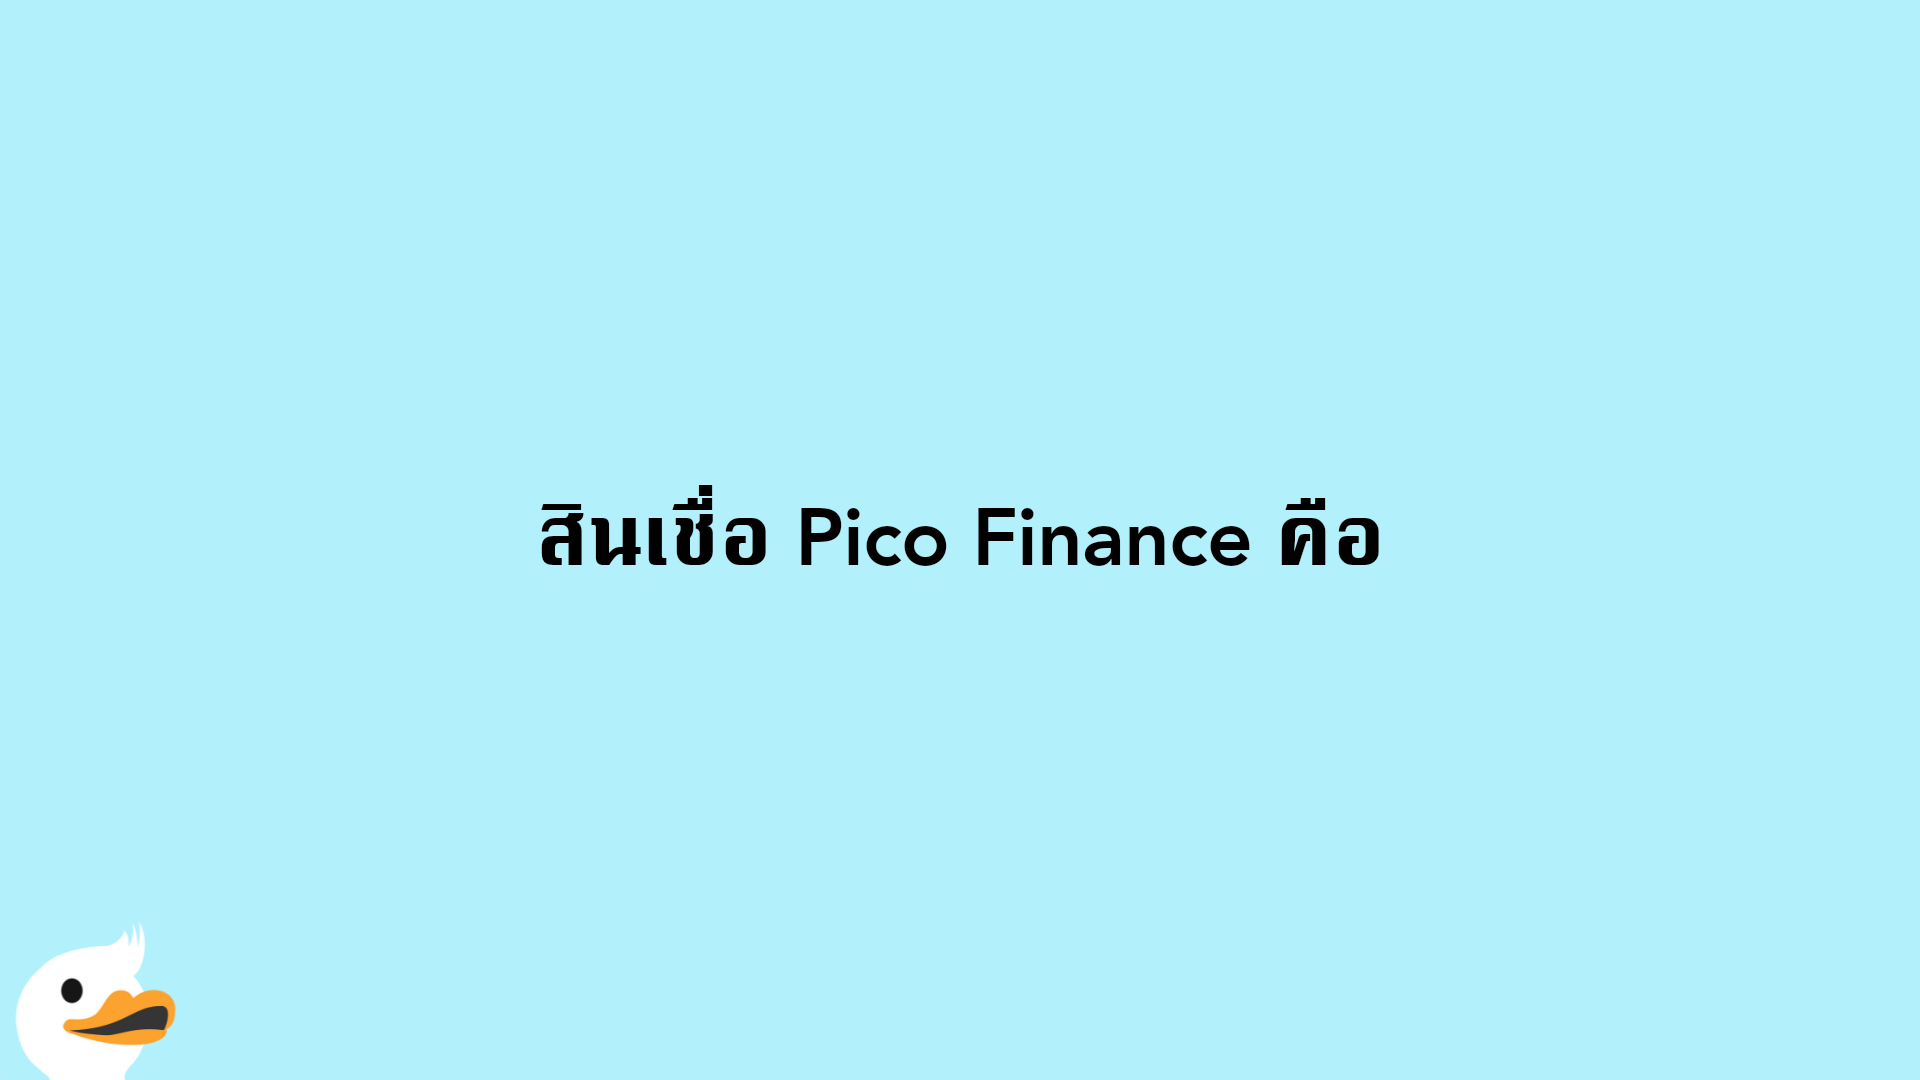 สินเชื่อ Pico Finance คือ